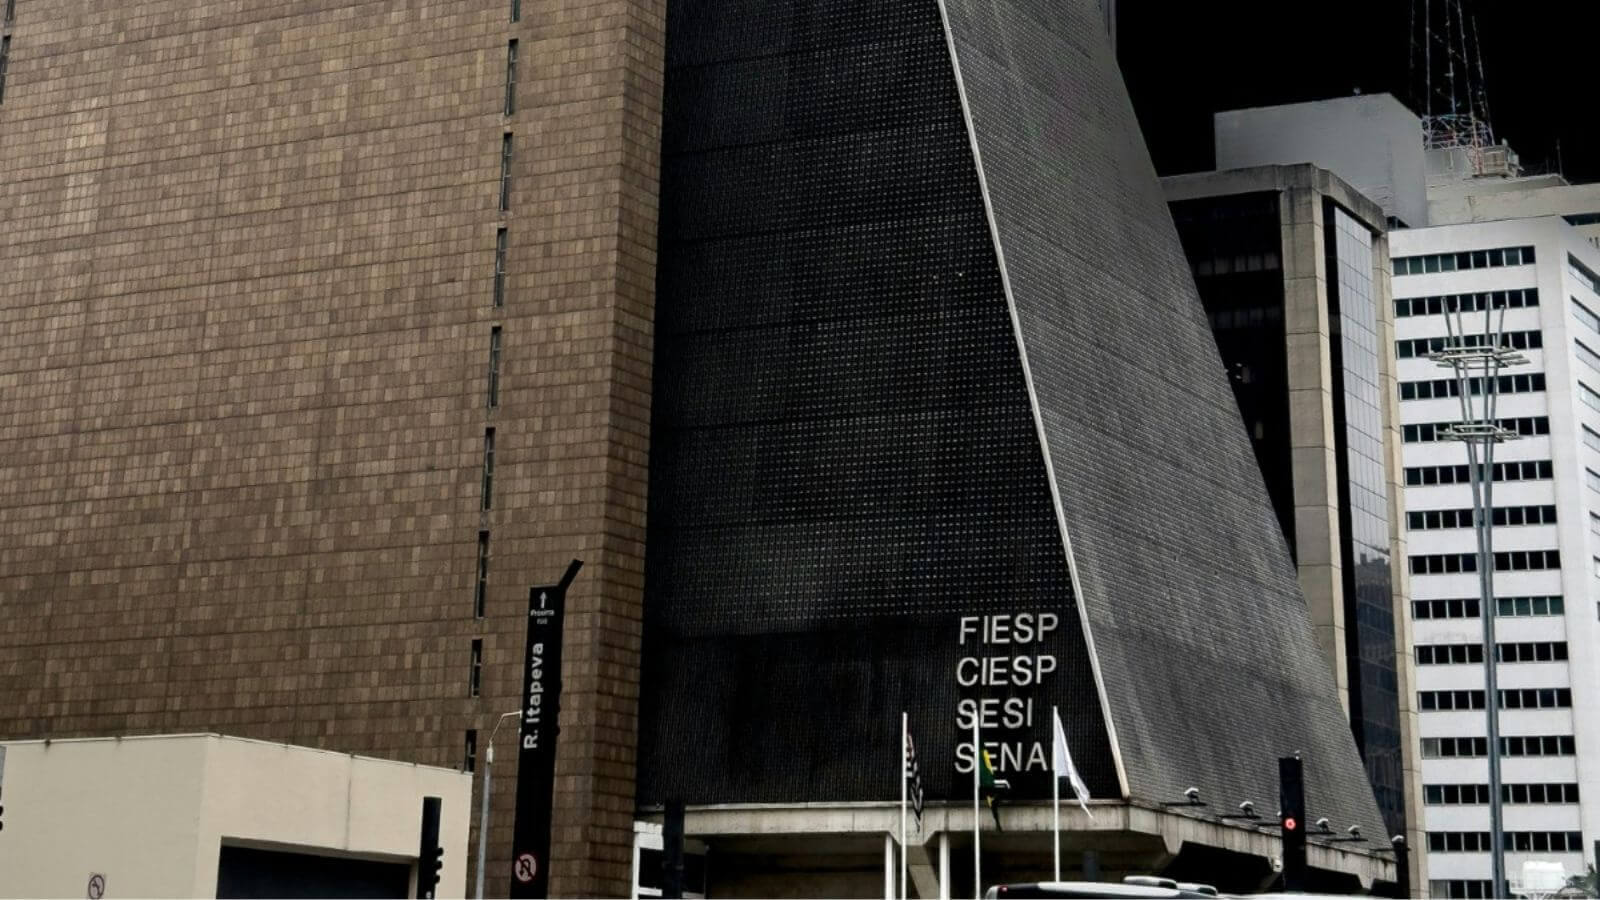 Entrada do prédio da Fiesp e Ciesp, em São Paulo